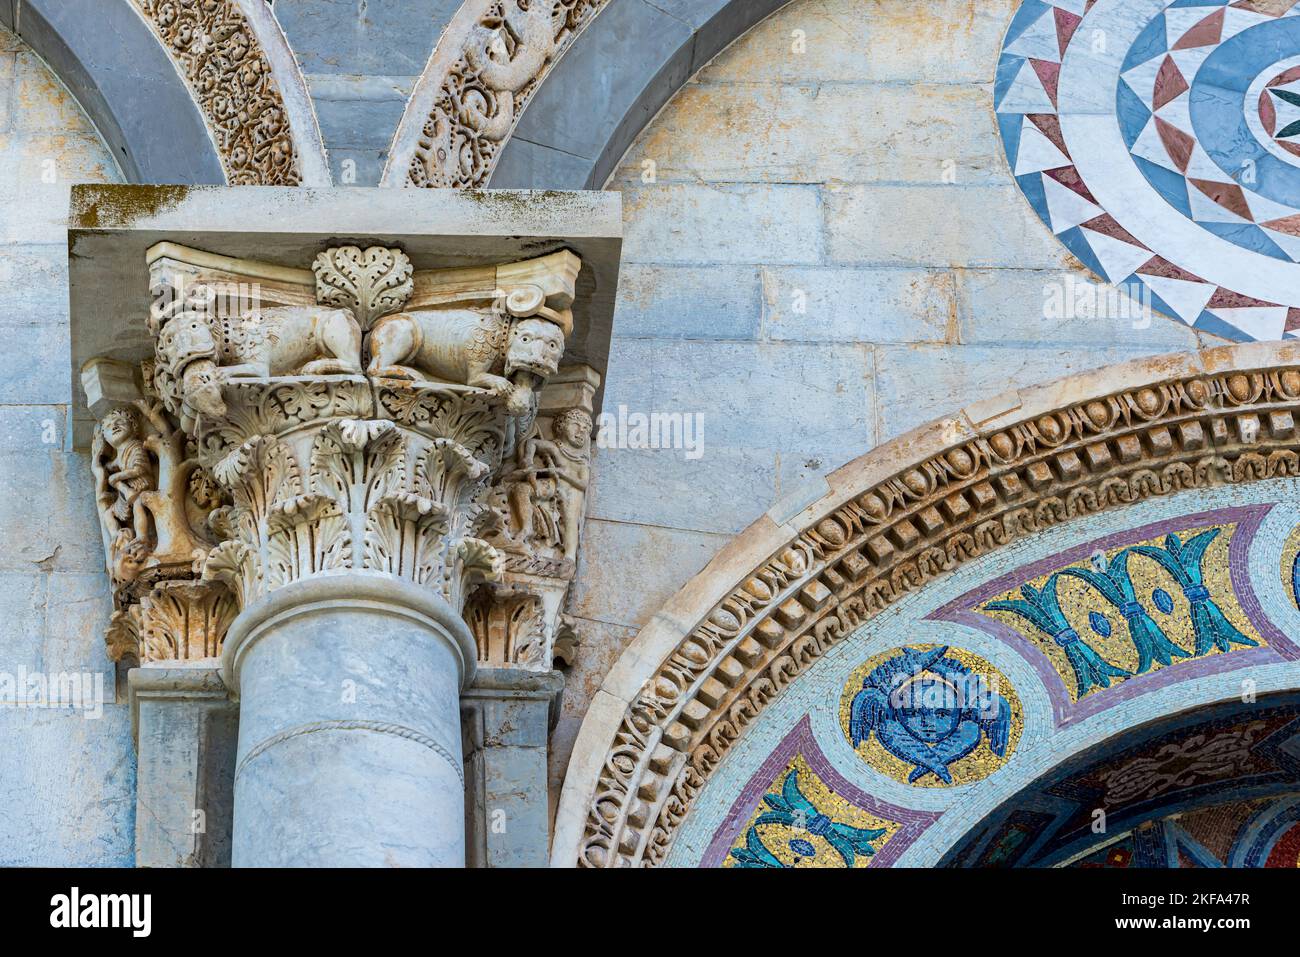 Nahaufnahme von Kreaturen in einer römischen Säule, die die Fassade der katholischen Basilika in Pisa schmücken Stockfoto